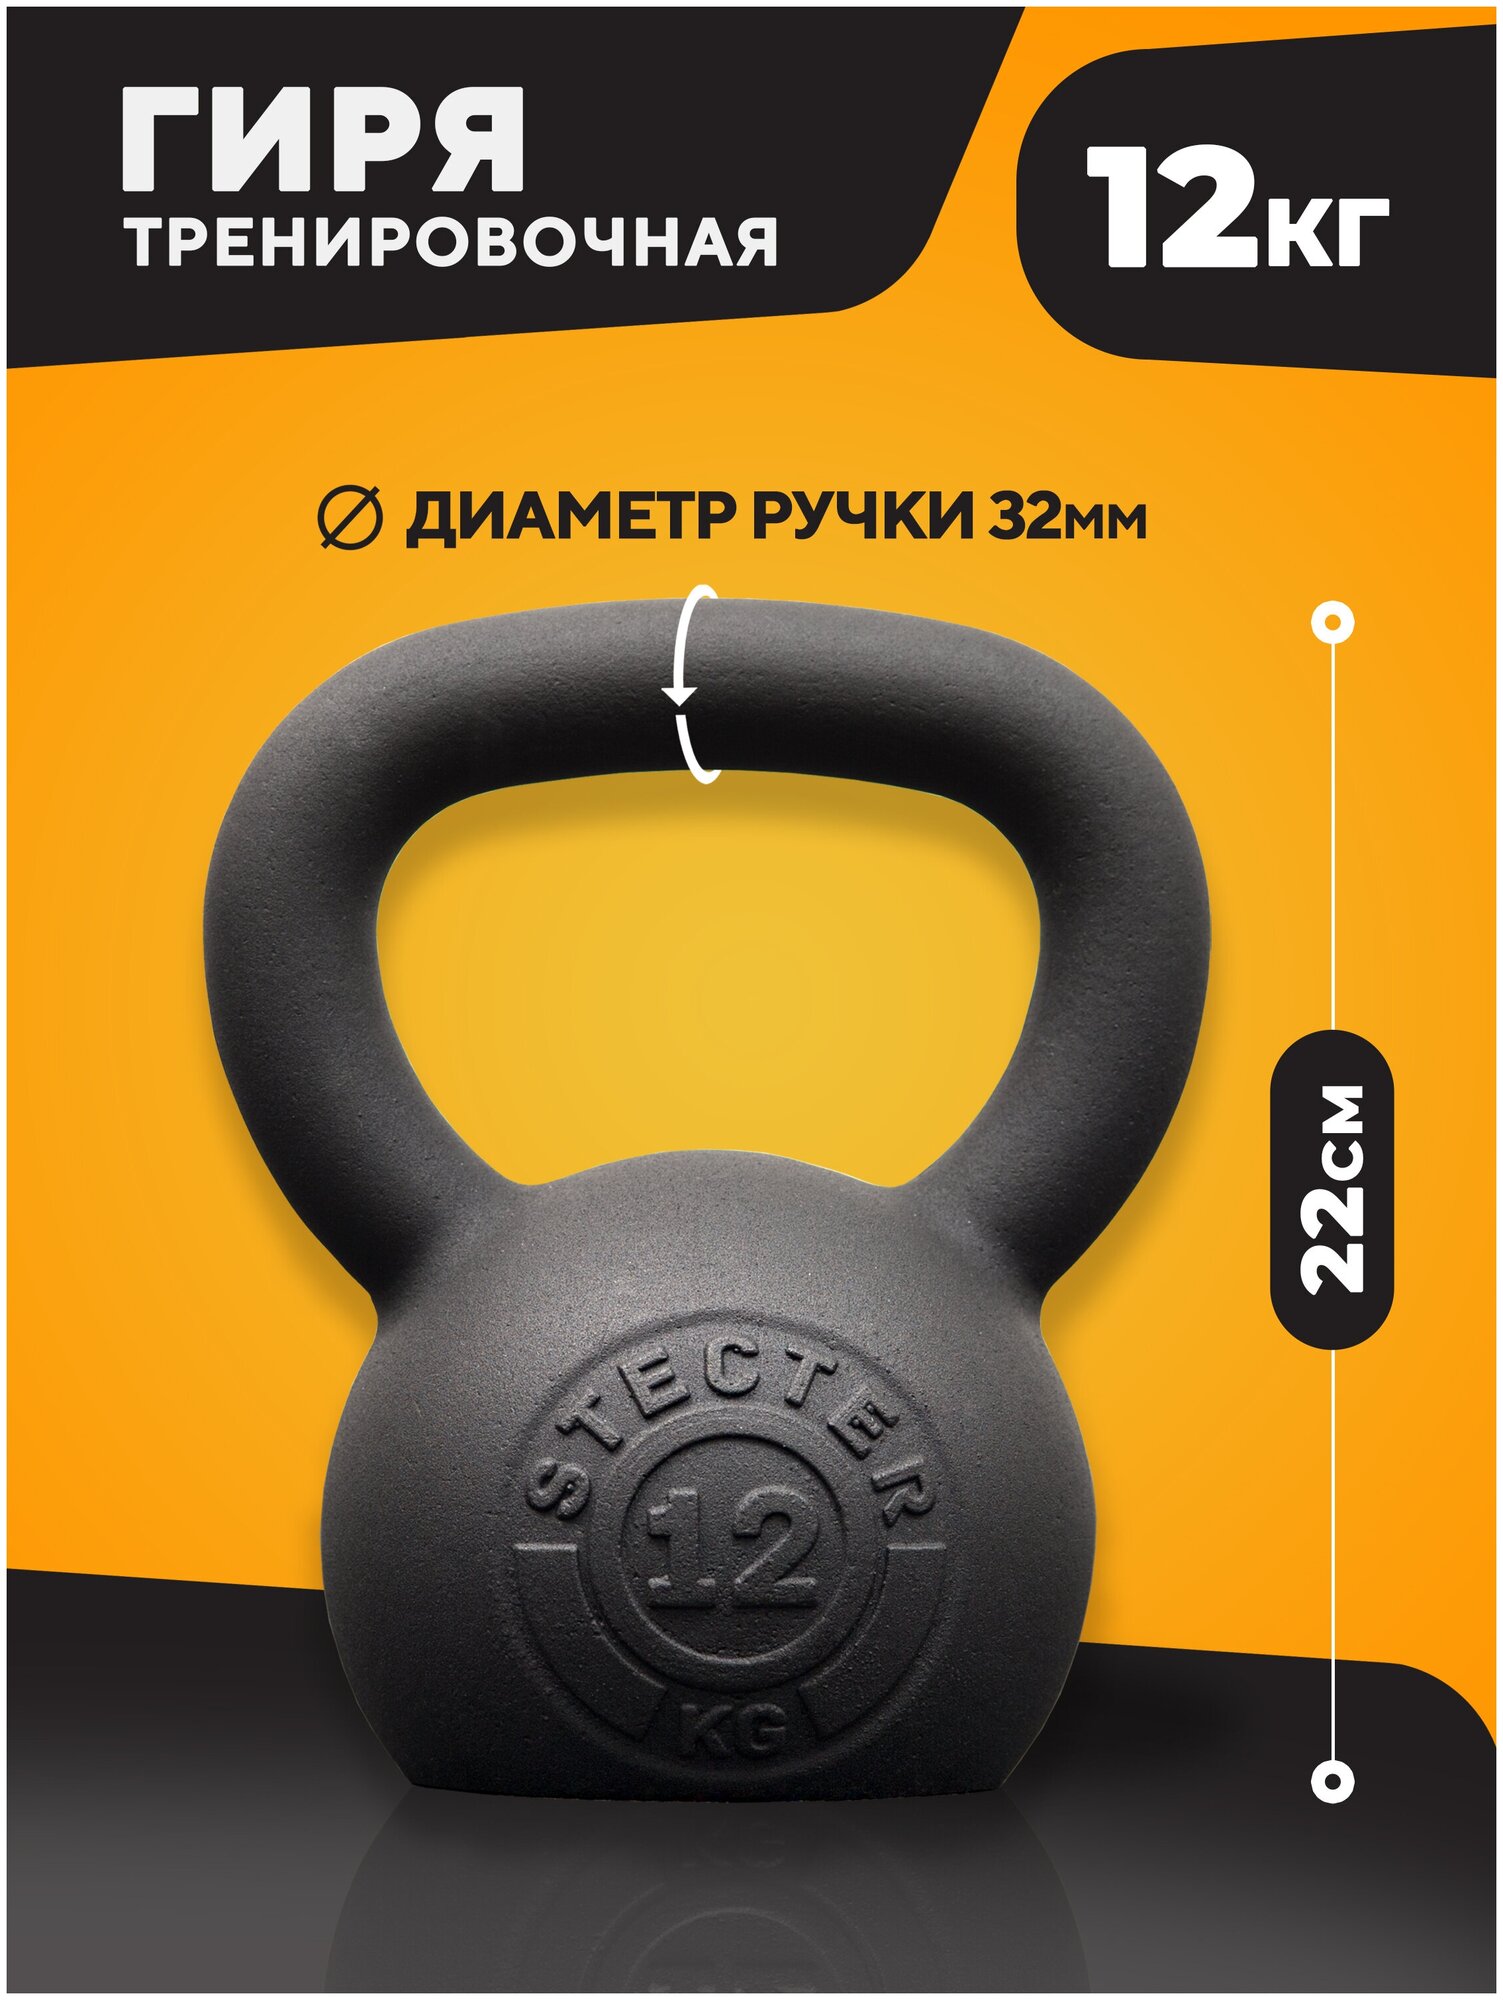 Гиря тренировочная 12 кг STECTER — купить в интернет-магазине по низкой цене на Яндекс Маркете